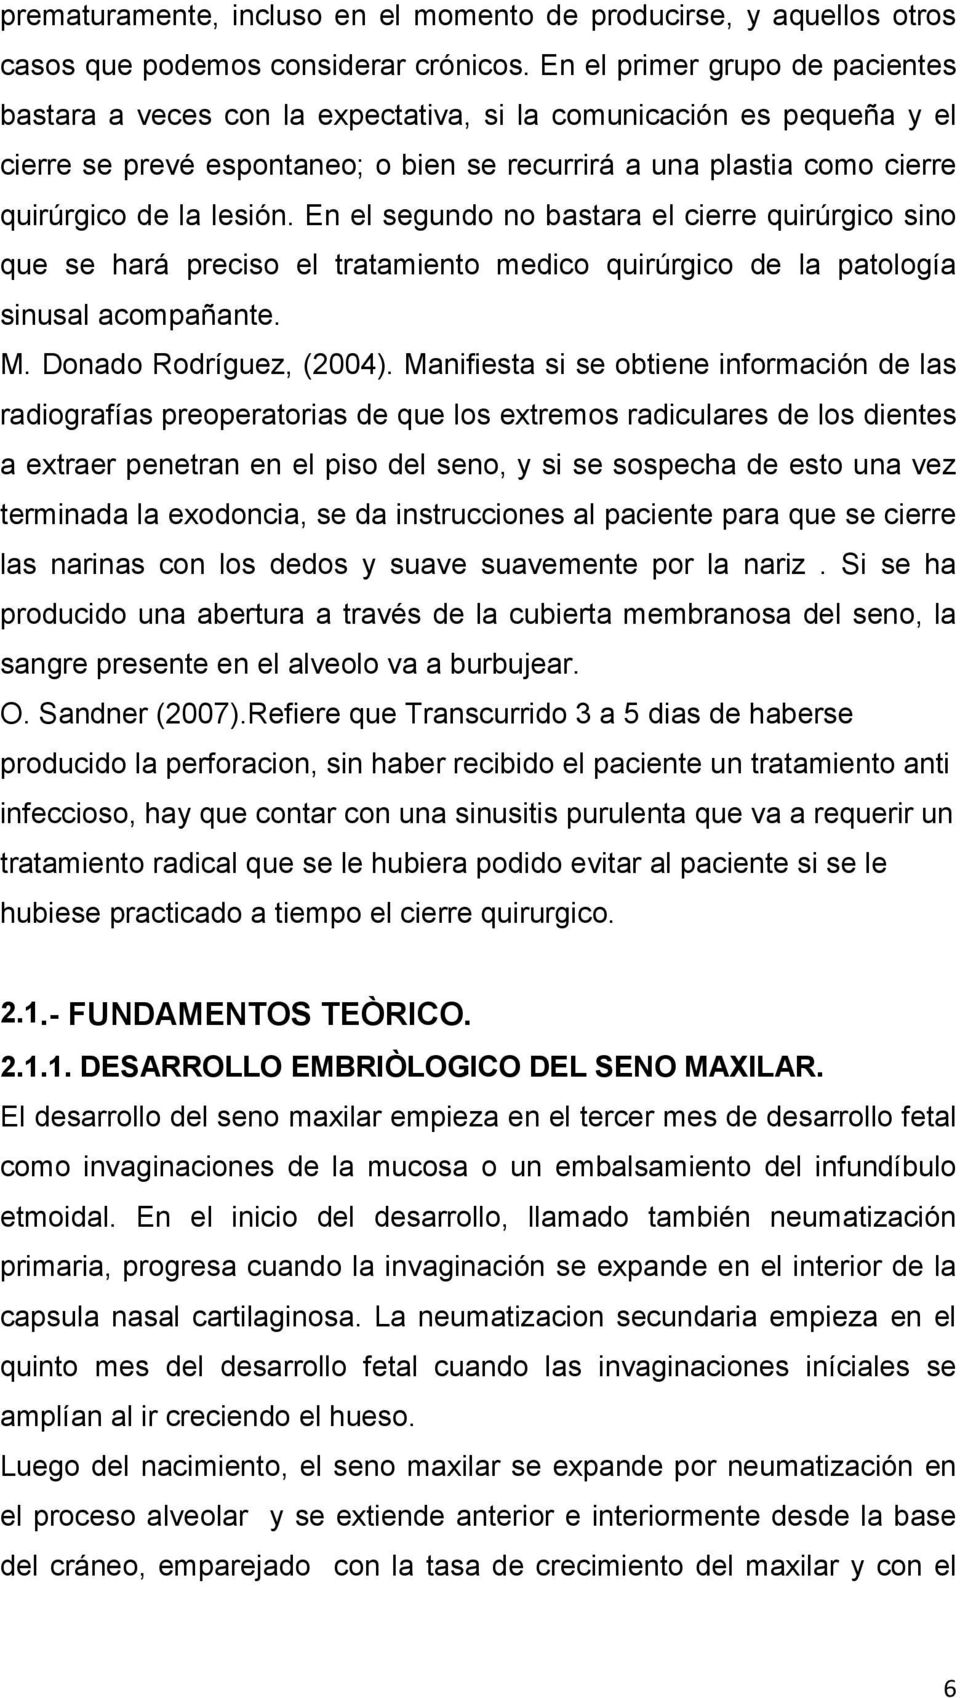 lesión. En el segundo no bastara el cierre quirúrgico sino que se hará preciso el tratamiento medico quirúrgico de la patología sinusal acompañante. M. Donado Rodríguez, (2004).